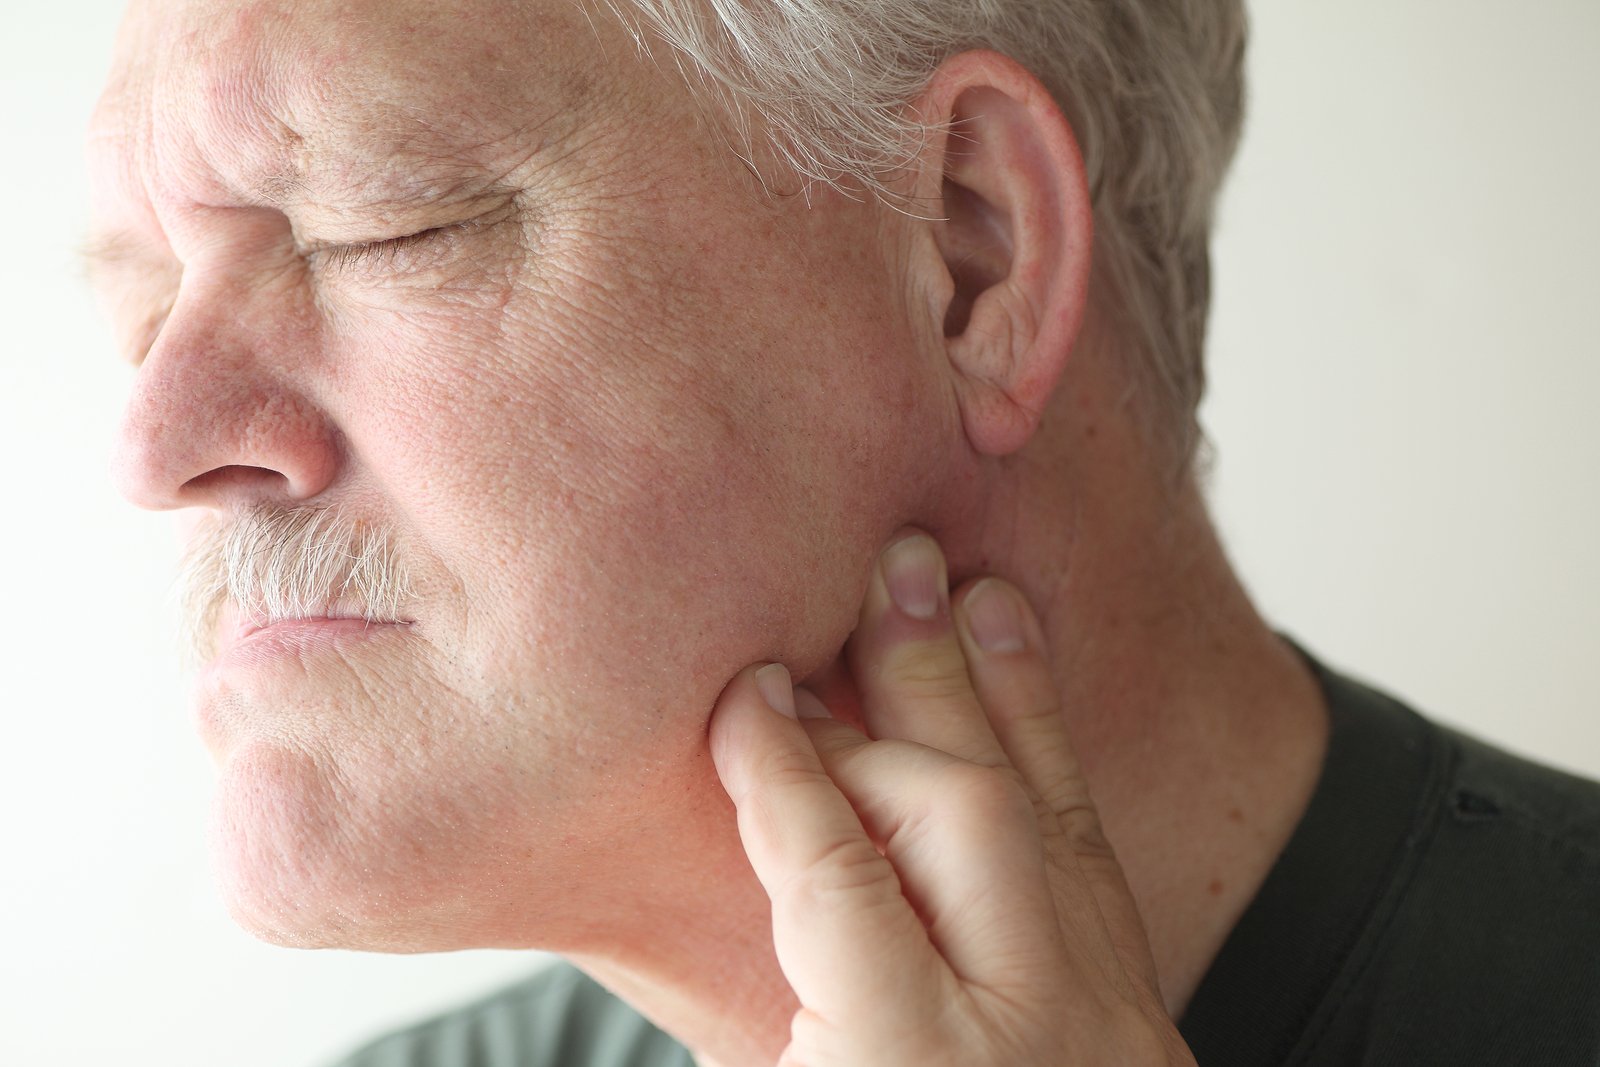 При открытии рта болит ухо. Злокачественная опухоль на шее.